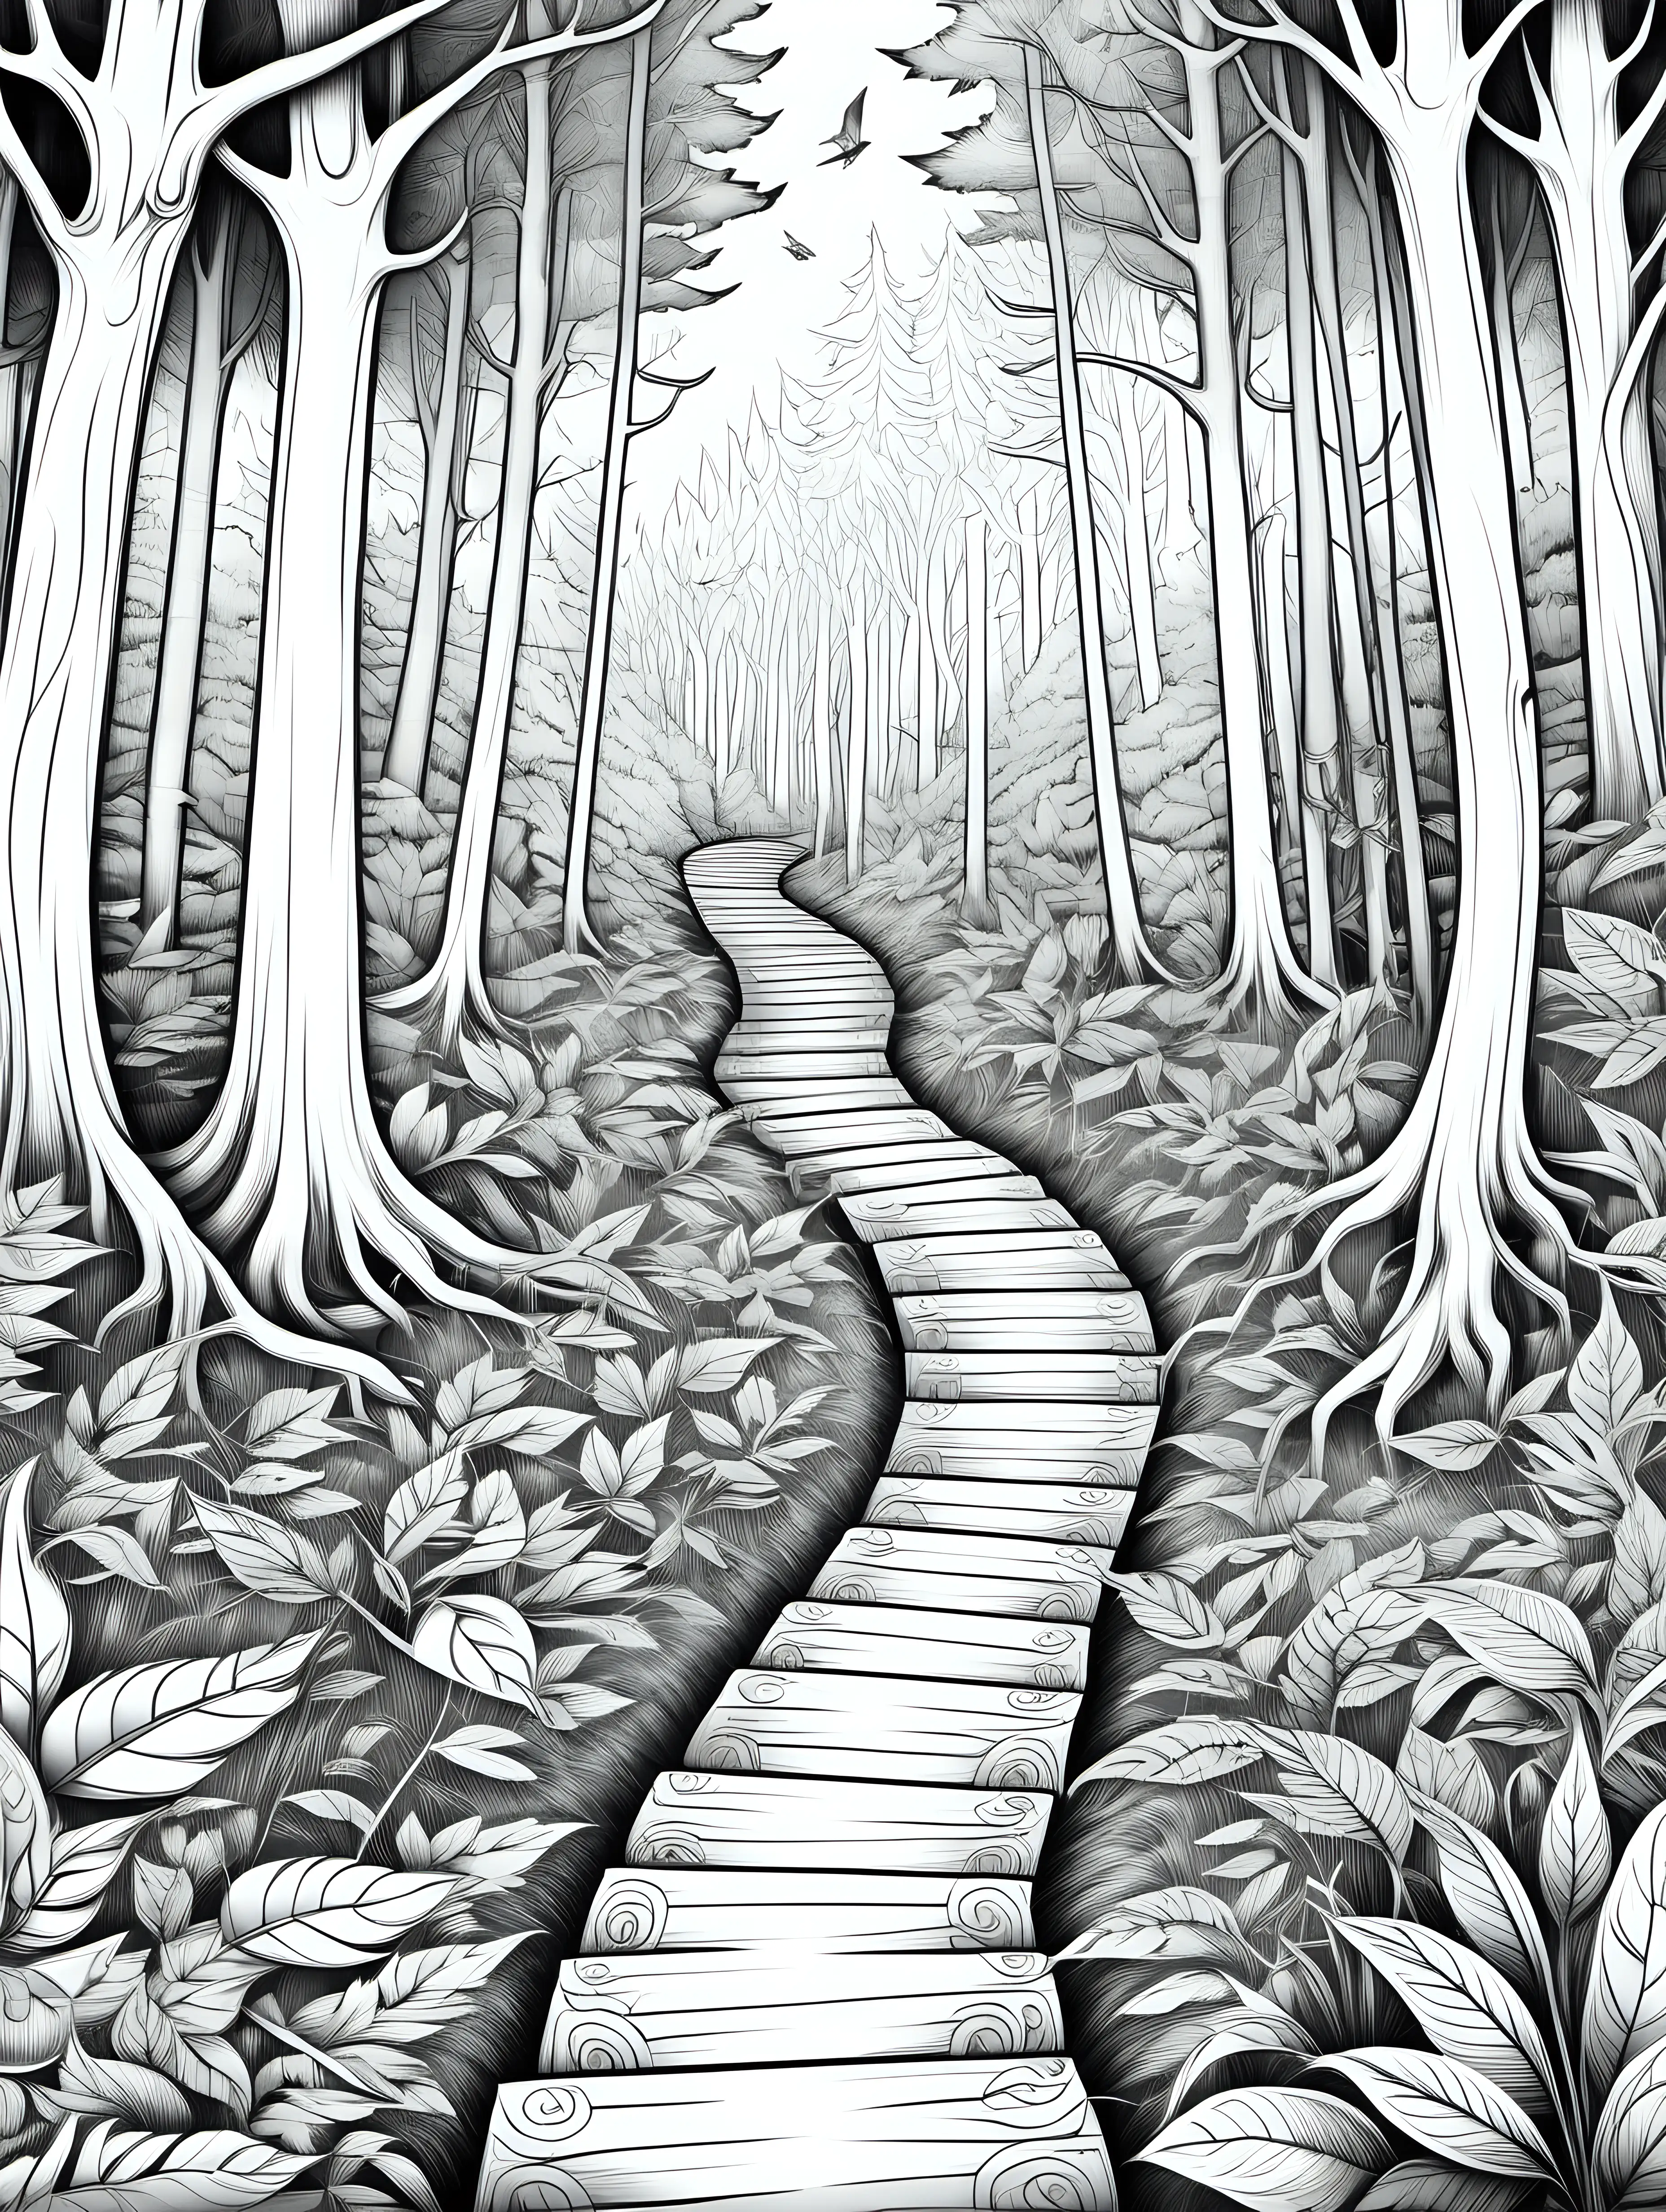 Illustriere für ein Malbuch für Erwachsene einen fein gezeichneten Waldweg mit 1 Wegweiser, der Mut macht und persönliche Entscheidungen symbolisiert. Nur schwarze, feine Linien und weißer Hintergrund